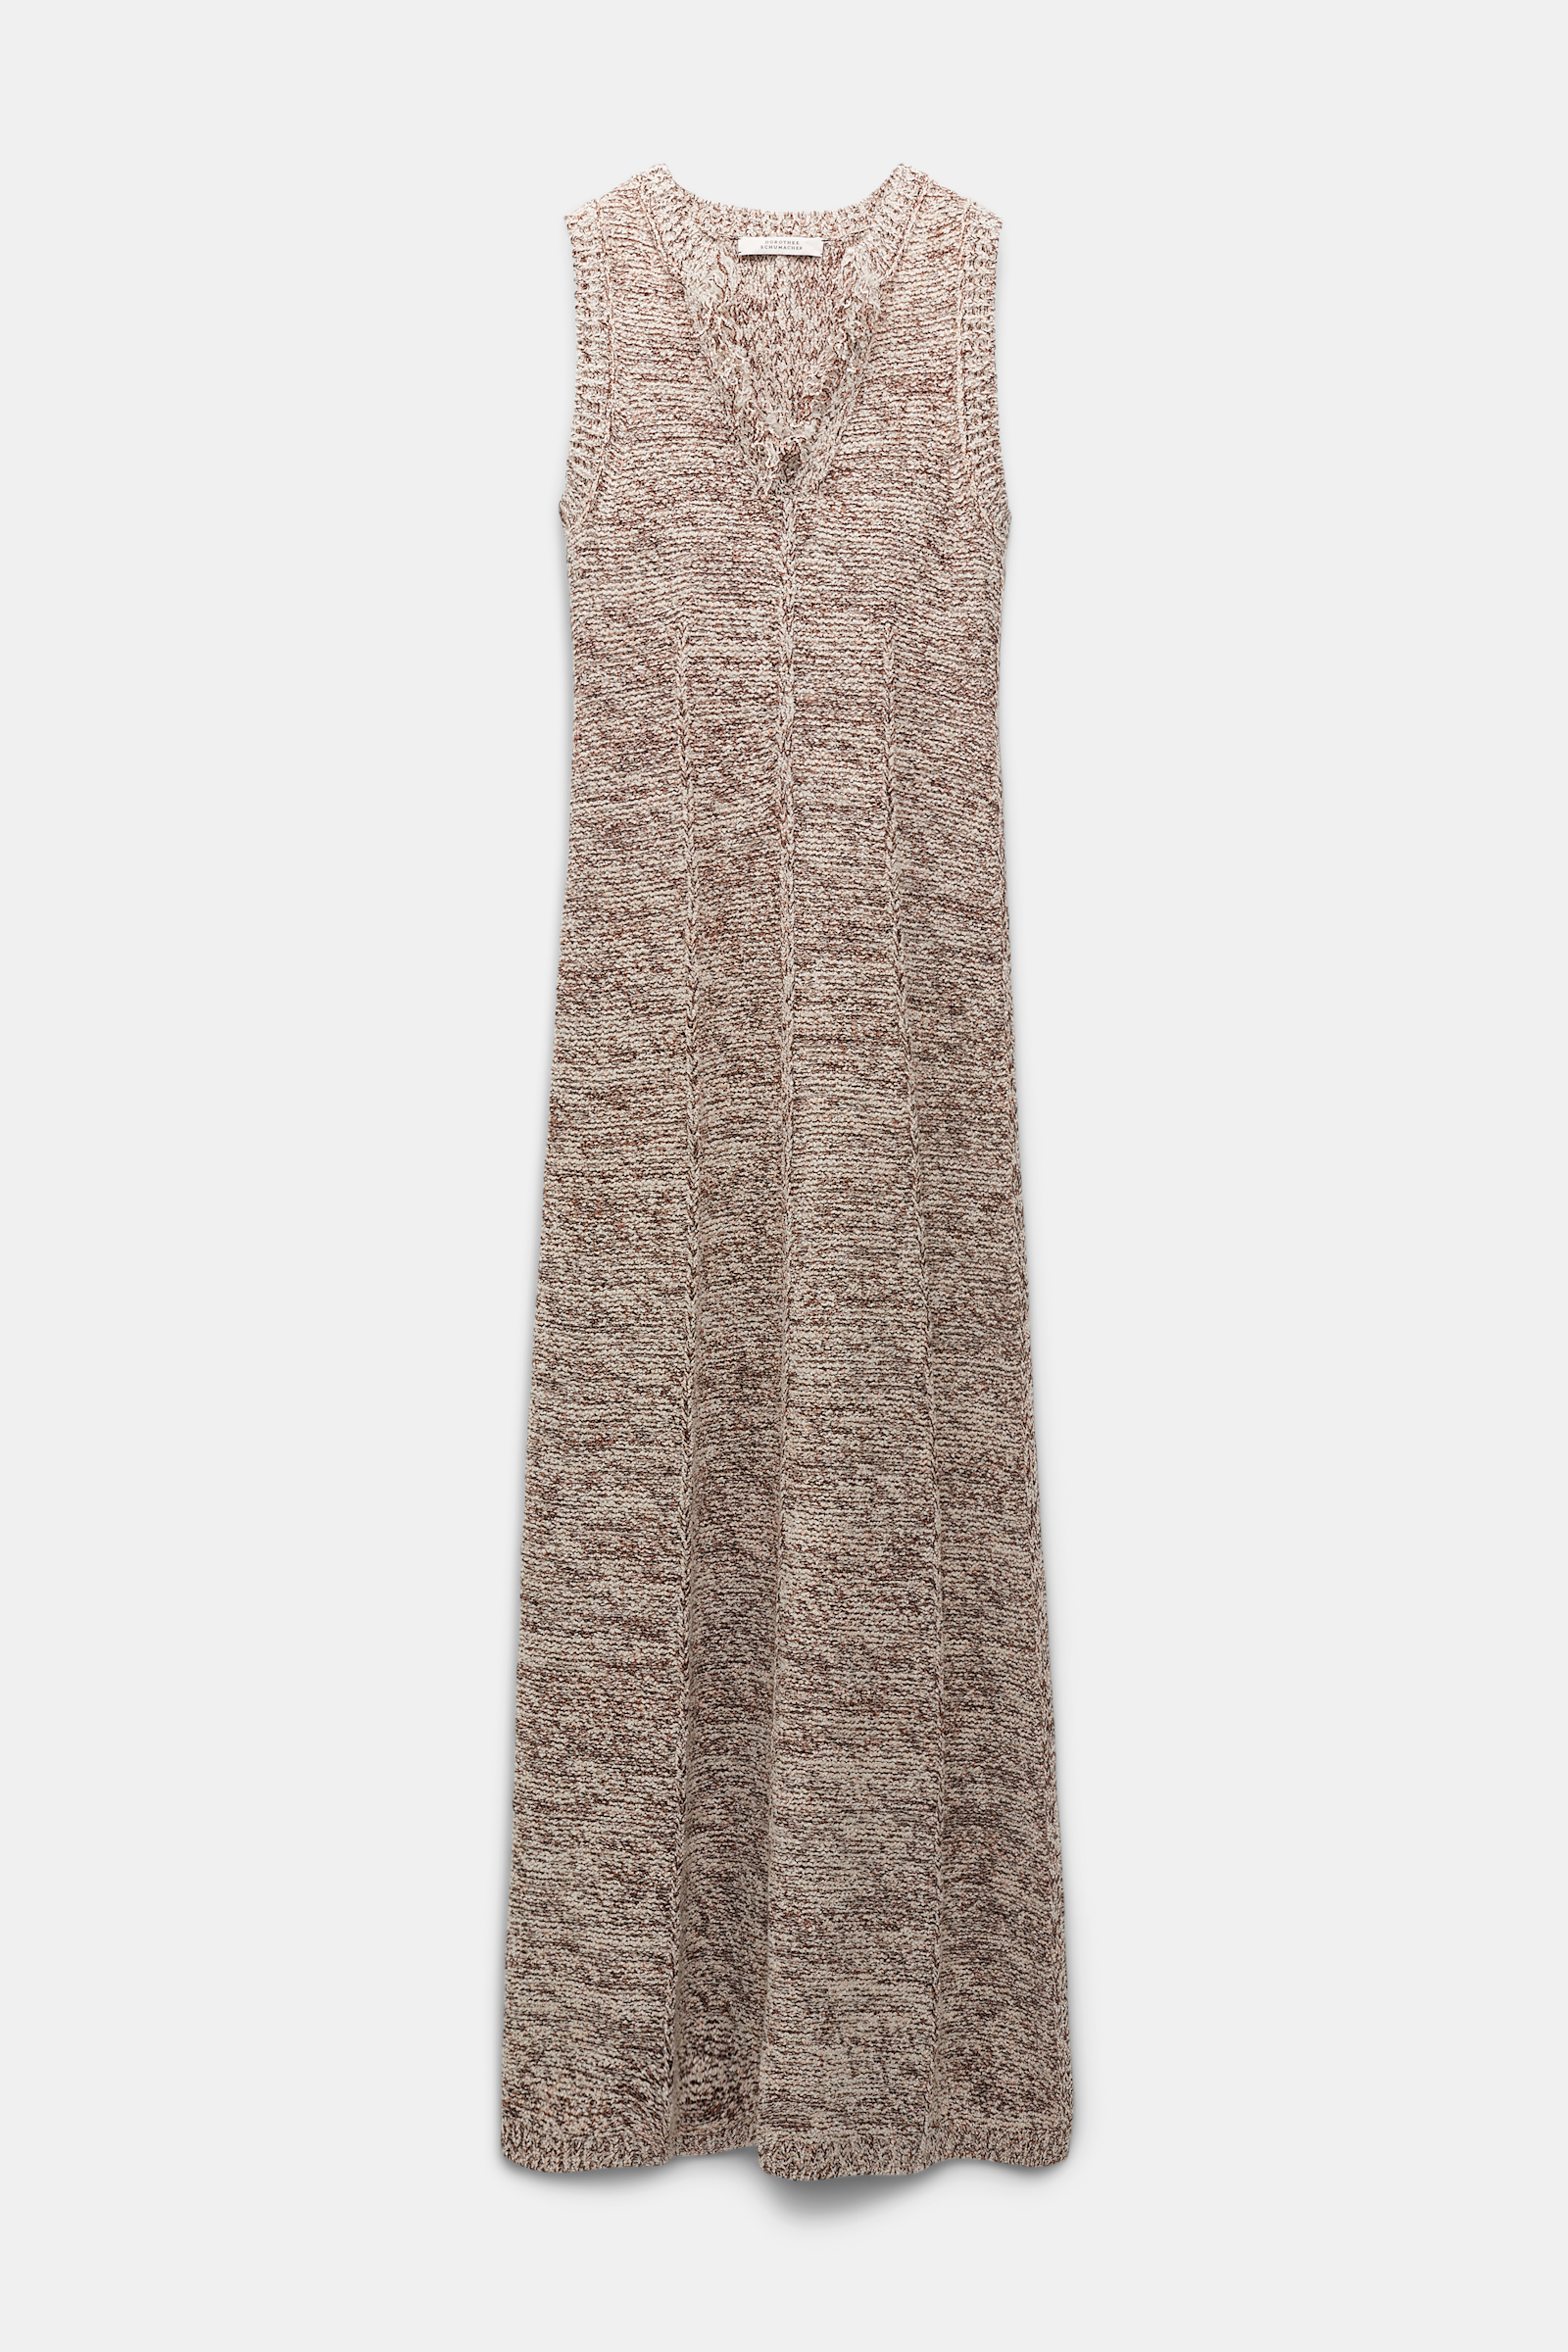 Dorothee Schumacher Kleid aus Baumwollmix mit Lurex-Effekt colorful brown mix